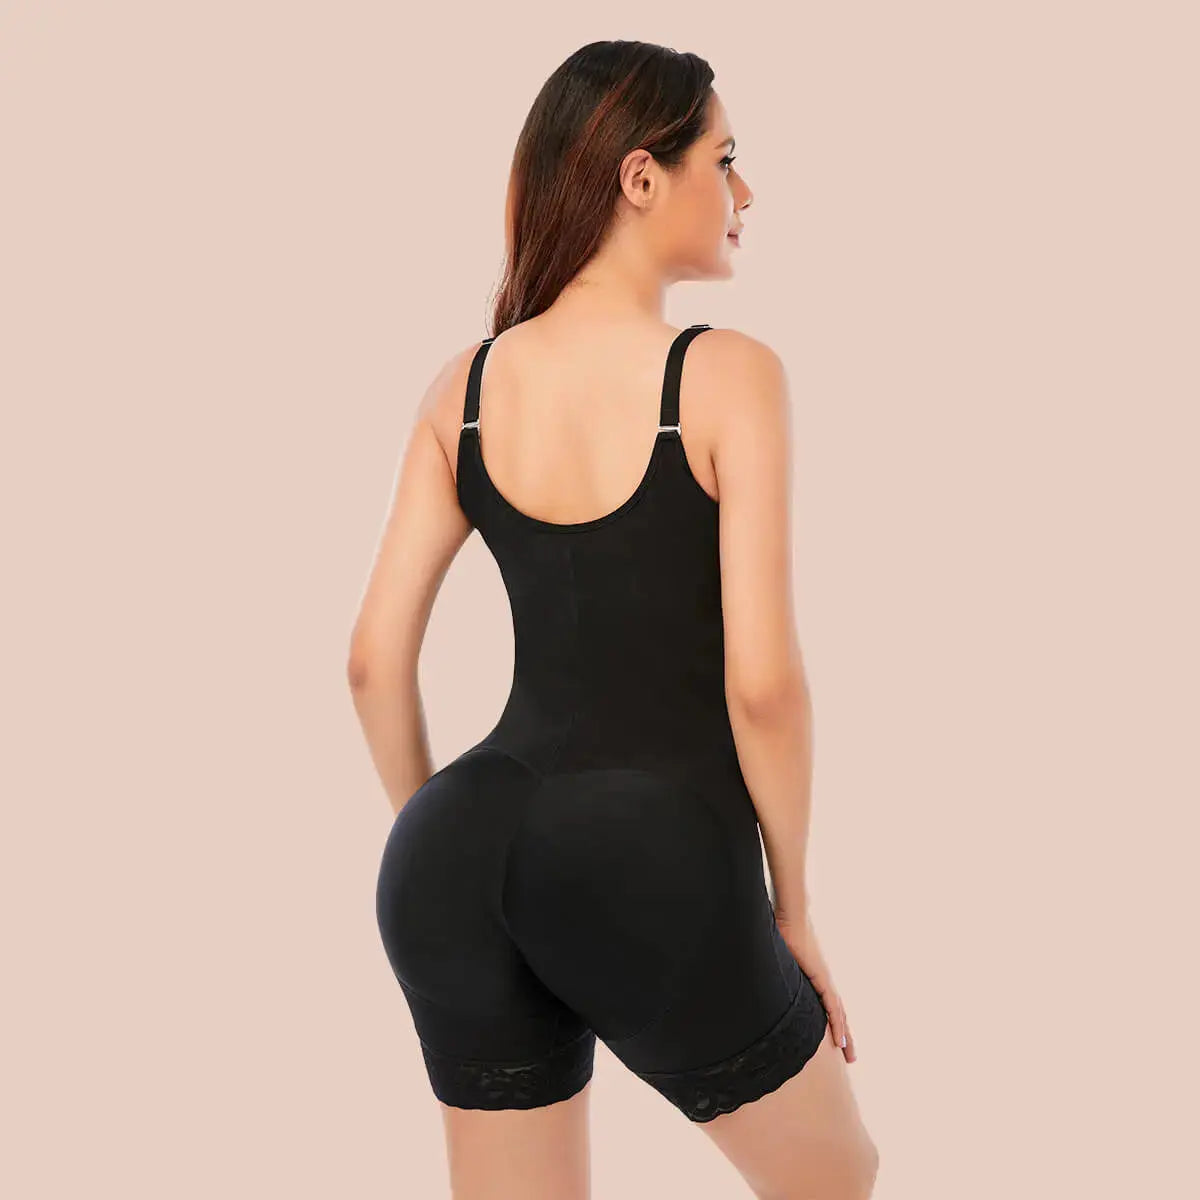 ₪105-Colombian Womens Pants Buttocks Lifter Women Body Shaper Buttlifter  Skims Underwear Bbl Shapewear Tummy Flattener Short-Description